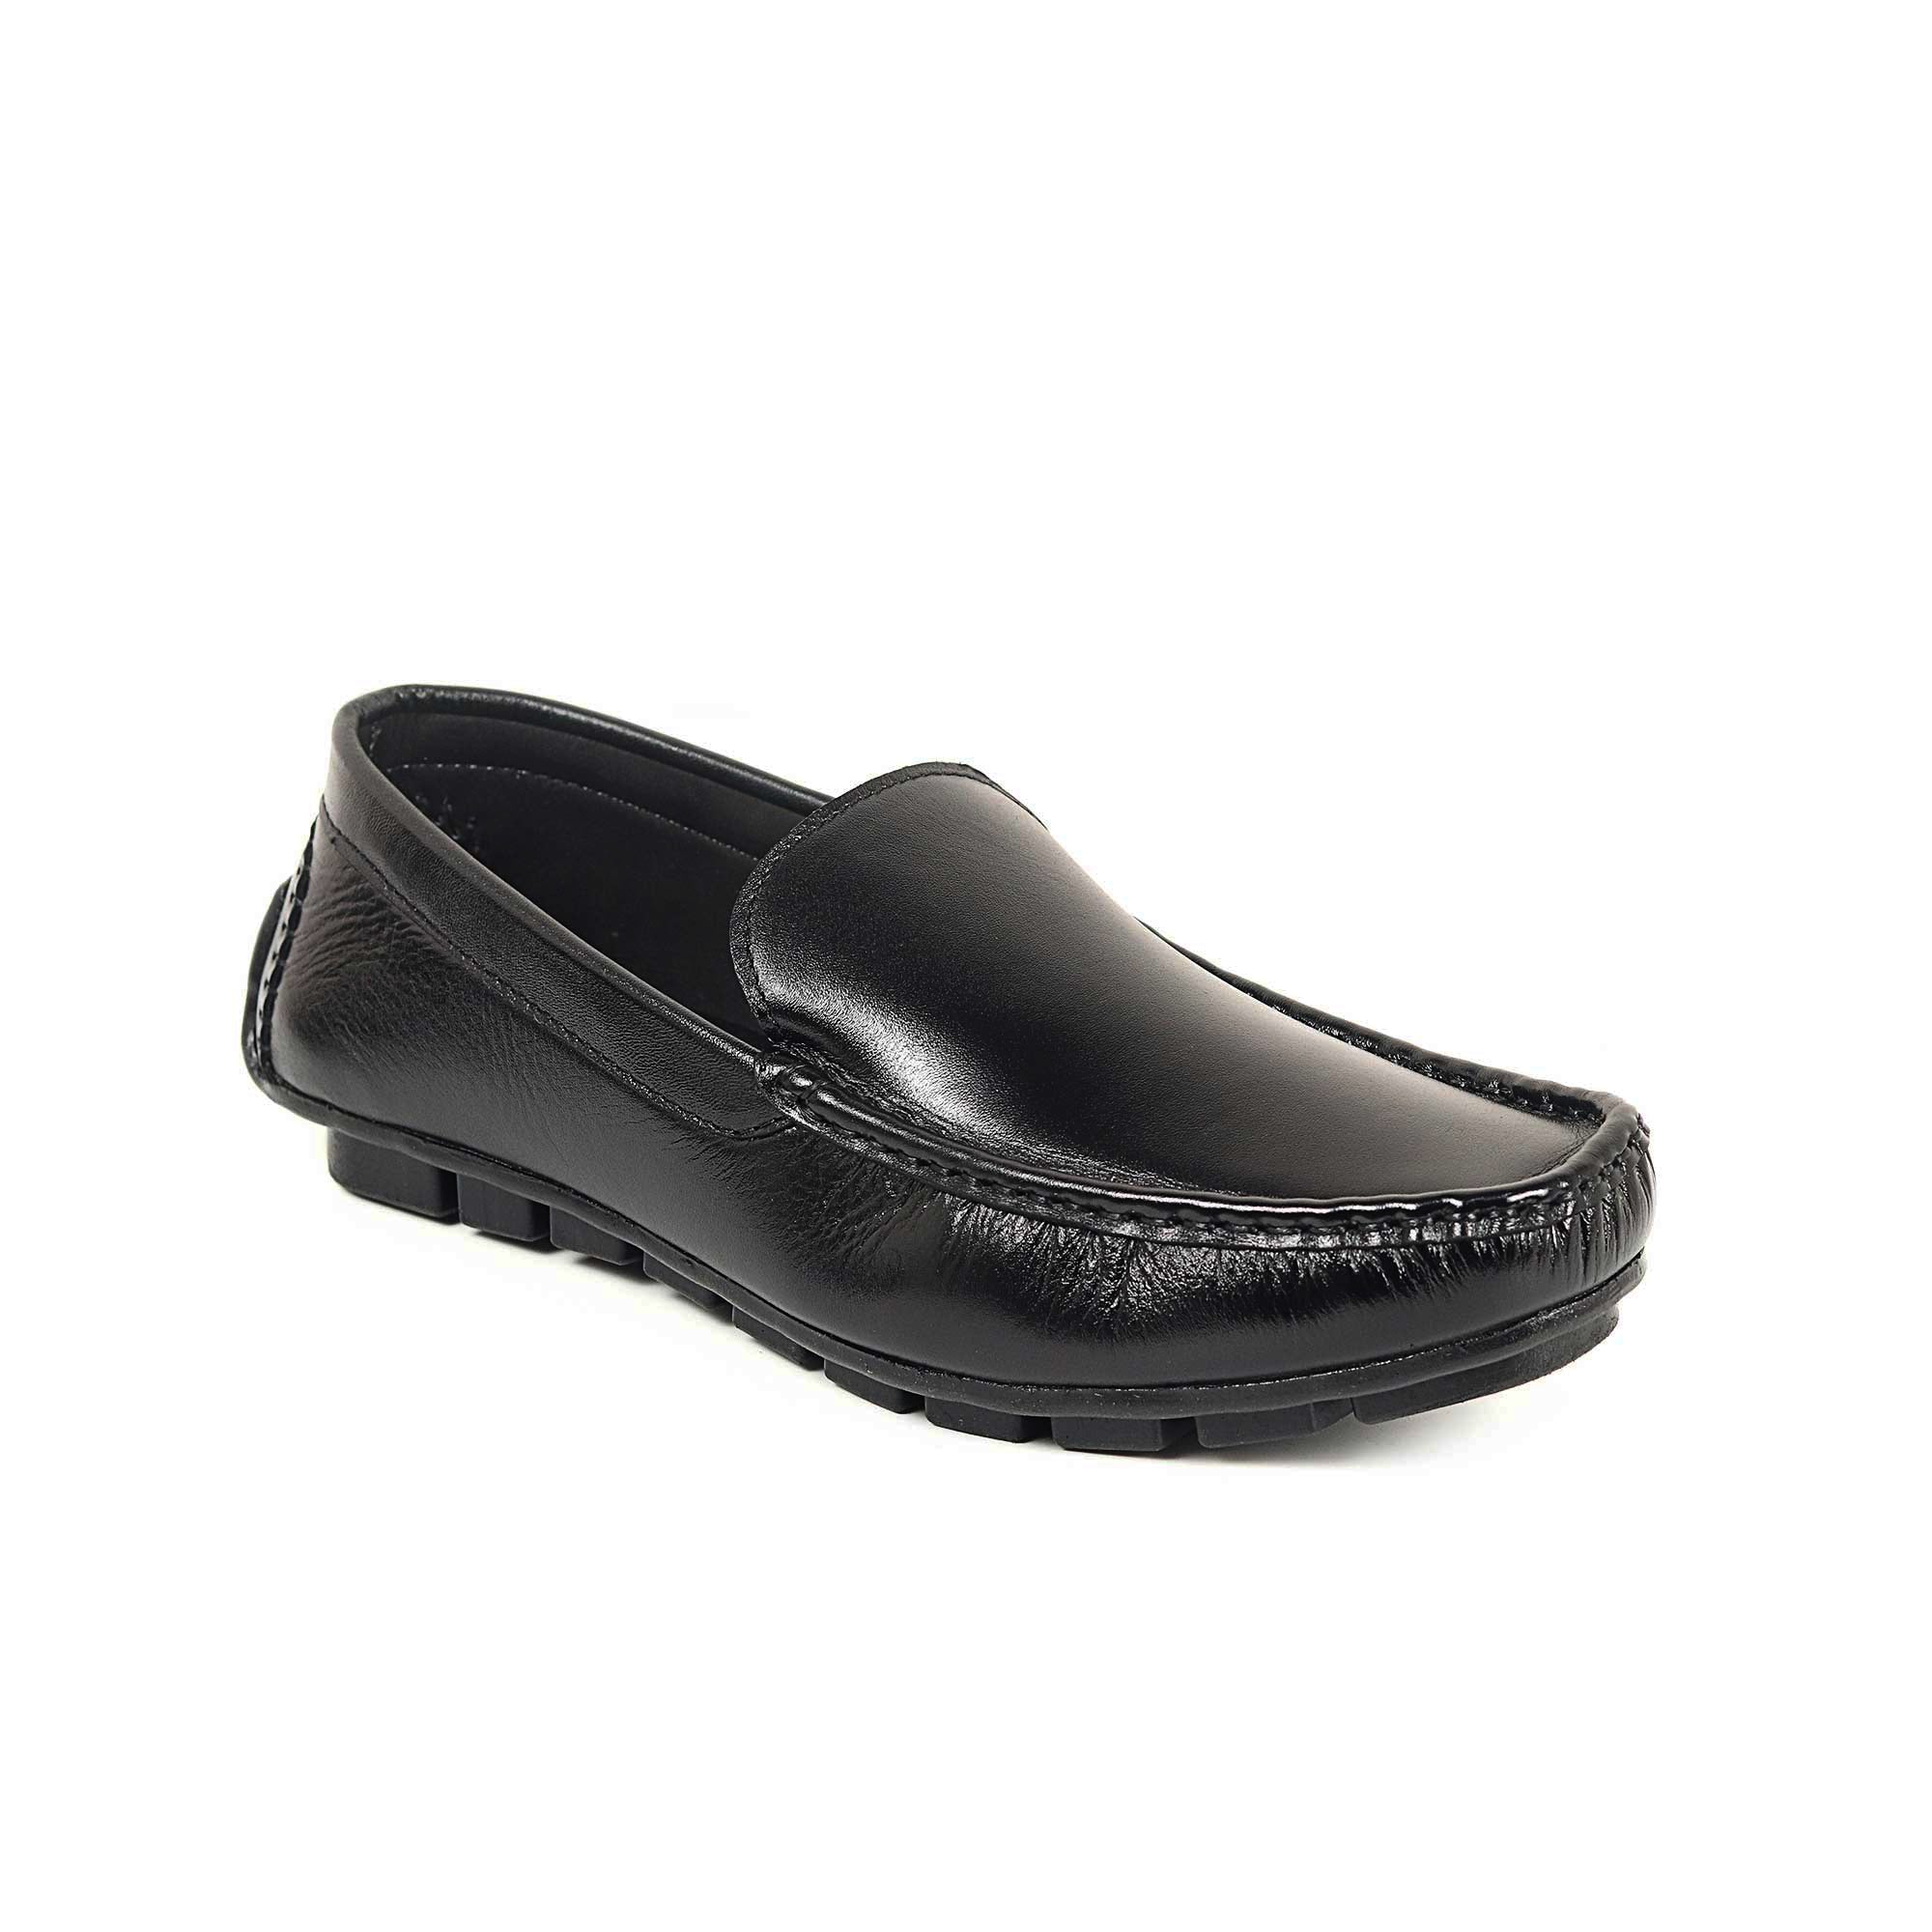 Zays Leather Premium Loafer Shoe For Men (Black) - ZAYSSF46